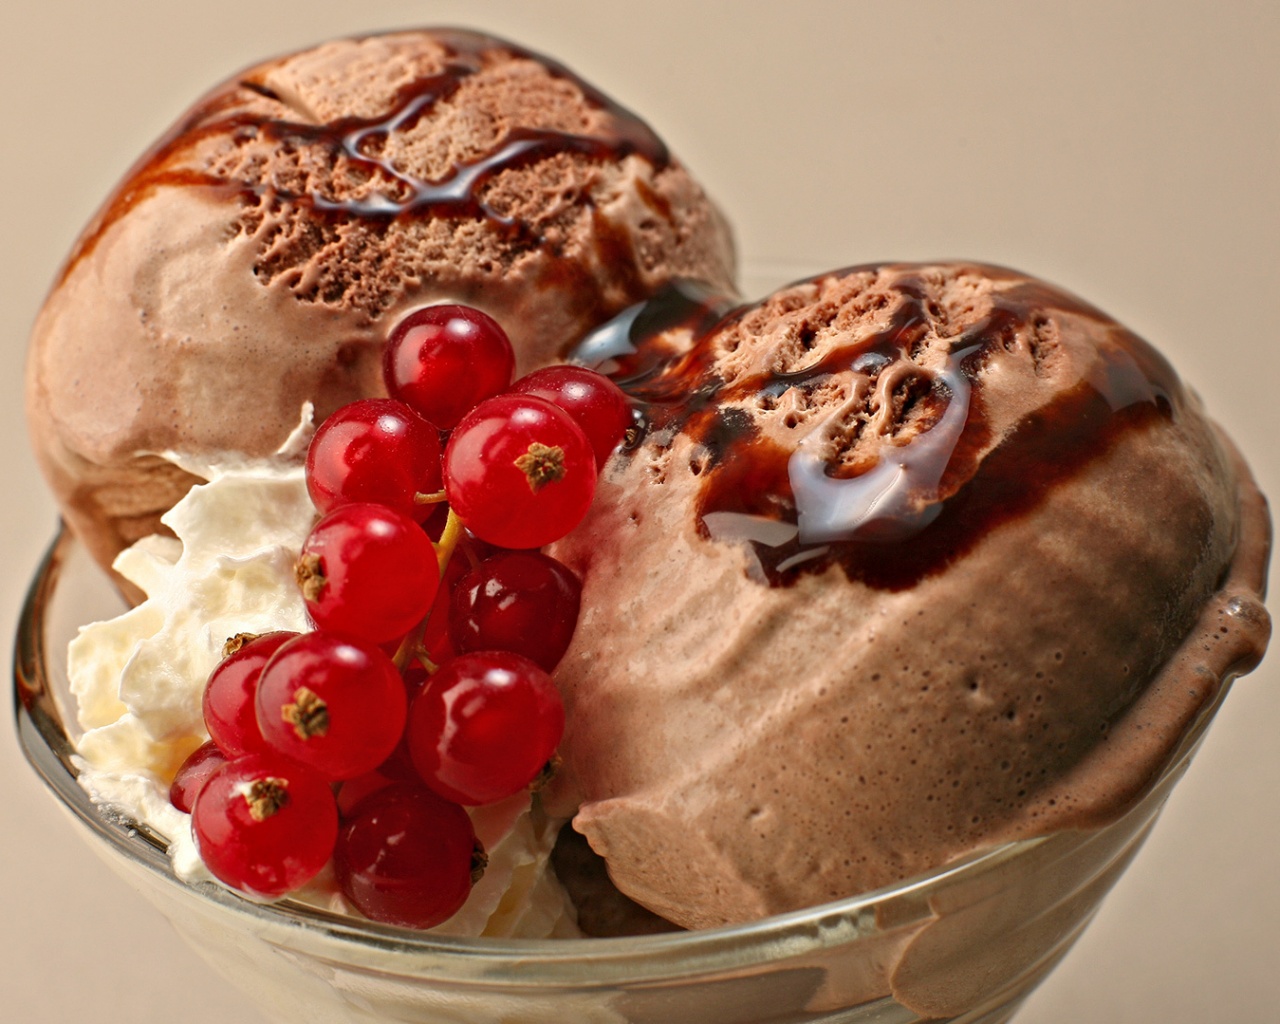 Шоколадное мороженое со смородинкой обои